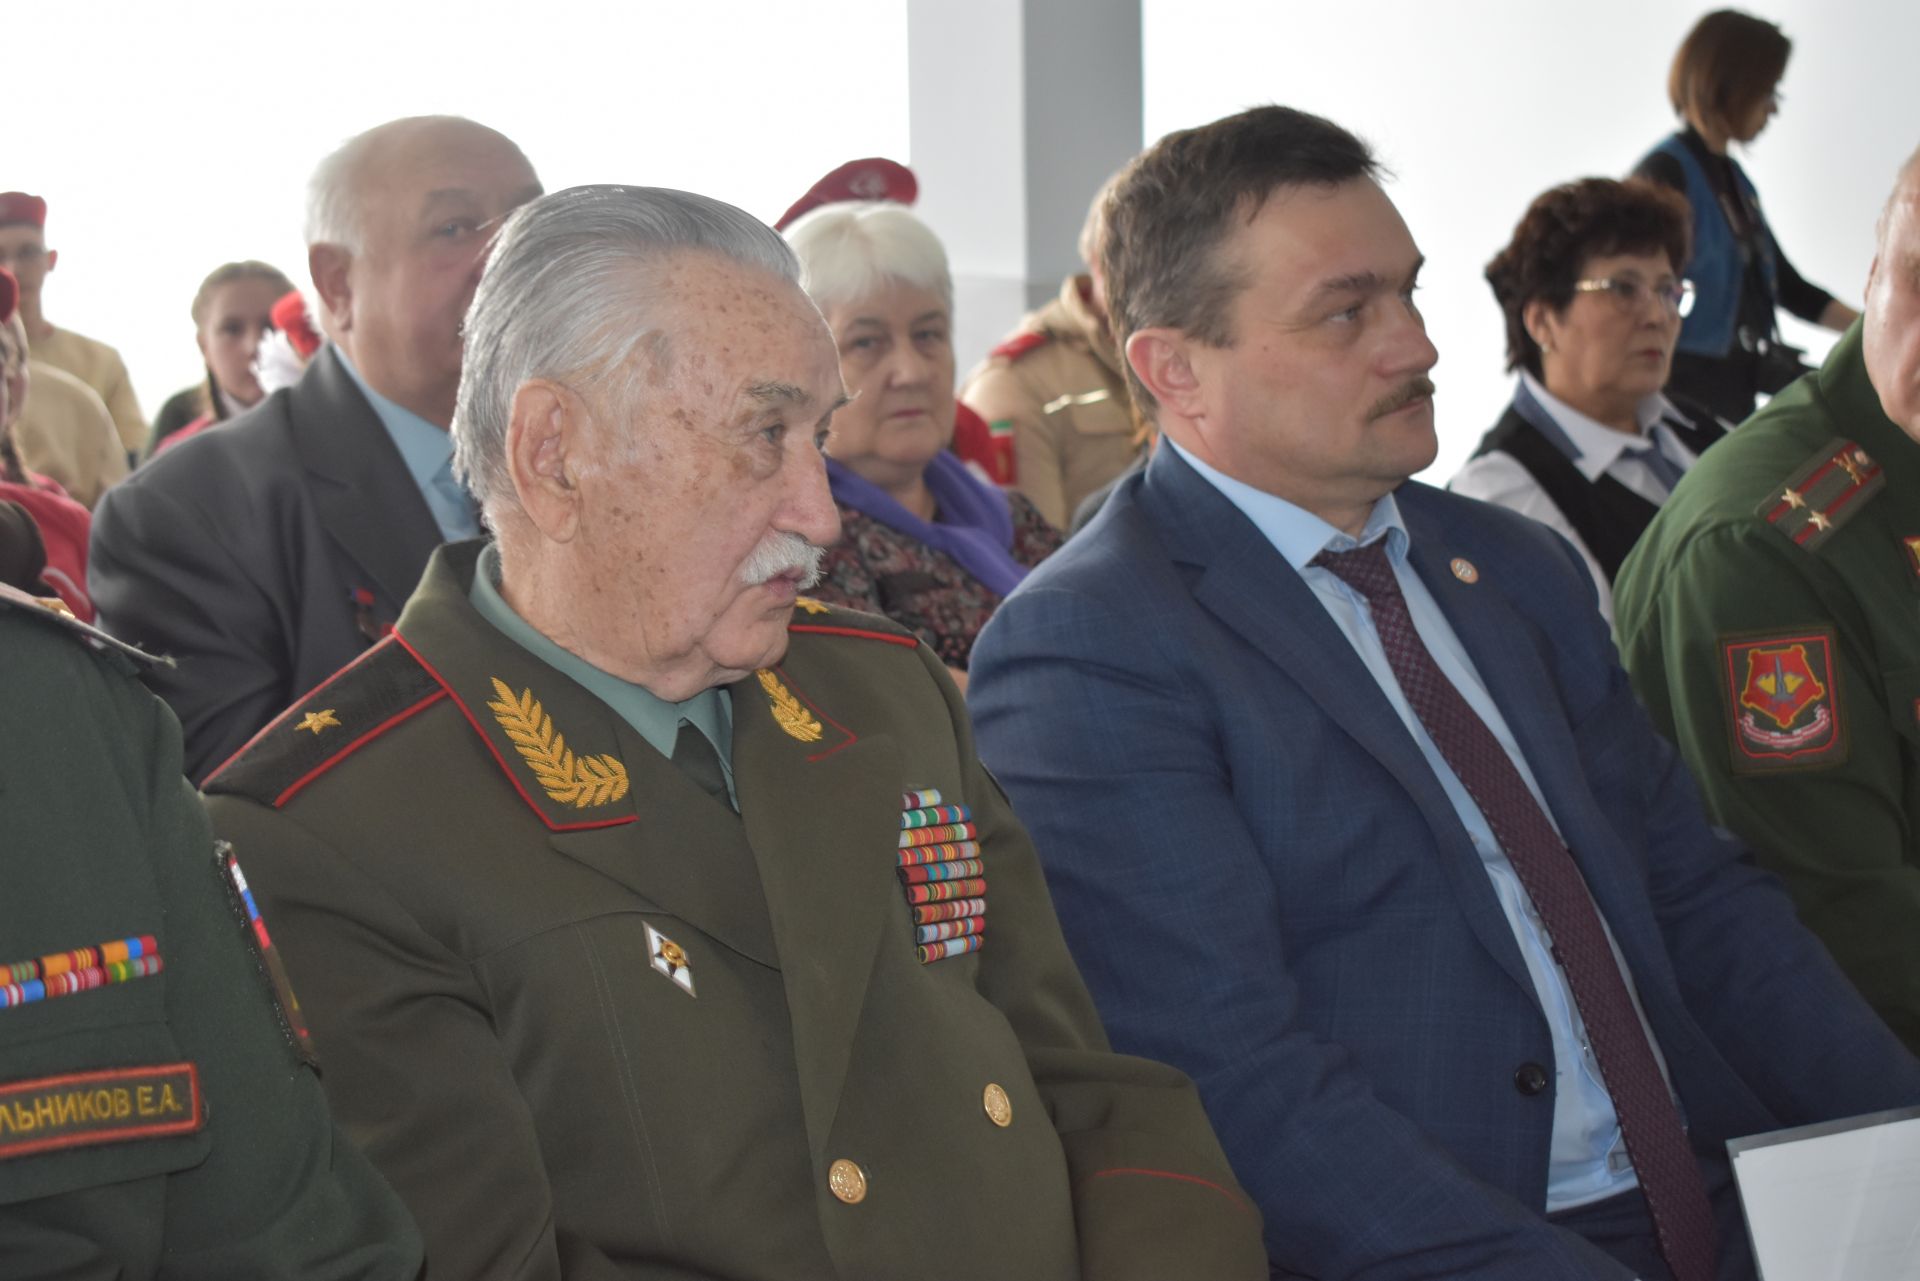 Представители общественной организации "Союз ветеранов РТ" посетили ряд мероприятий в Верхнем Услоне